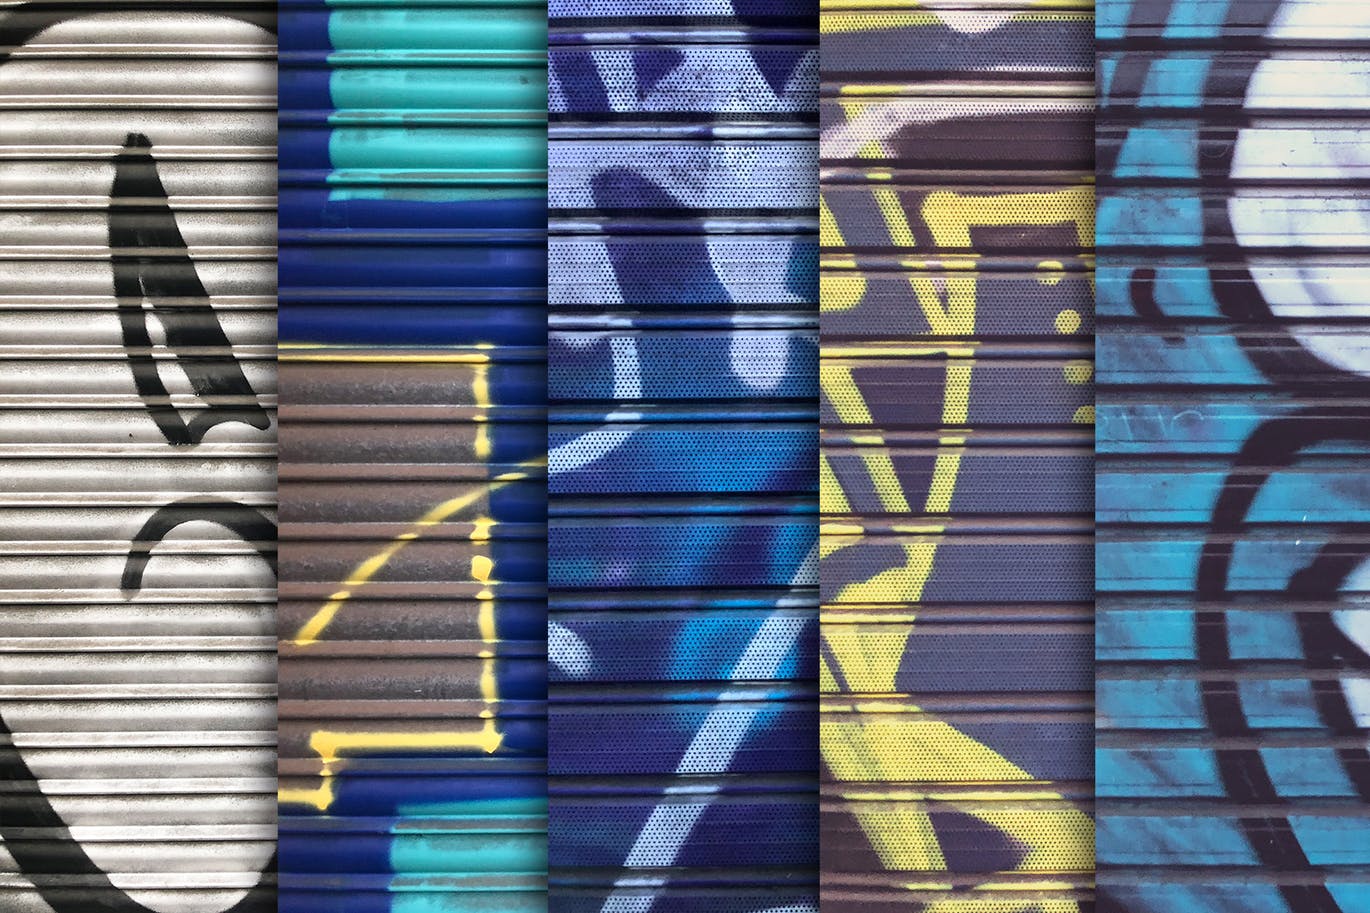 10张欧美风格车库门涂鸦纹理背景图素材 Garage Door Graffiti Textures x10插图2